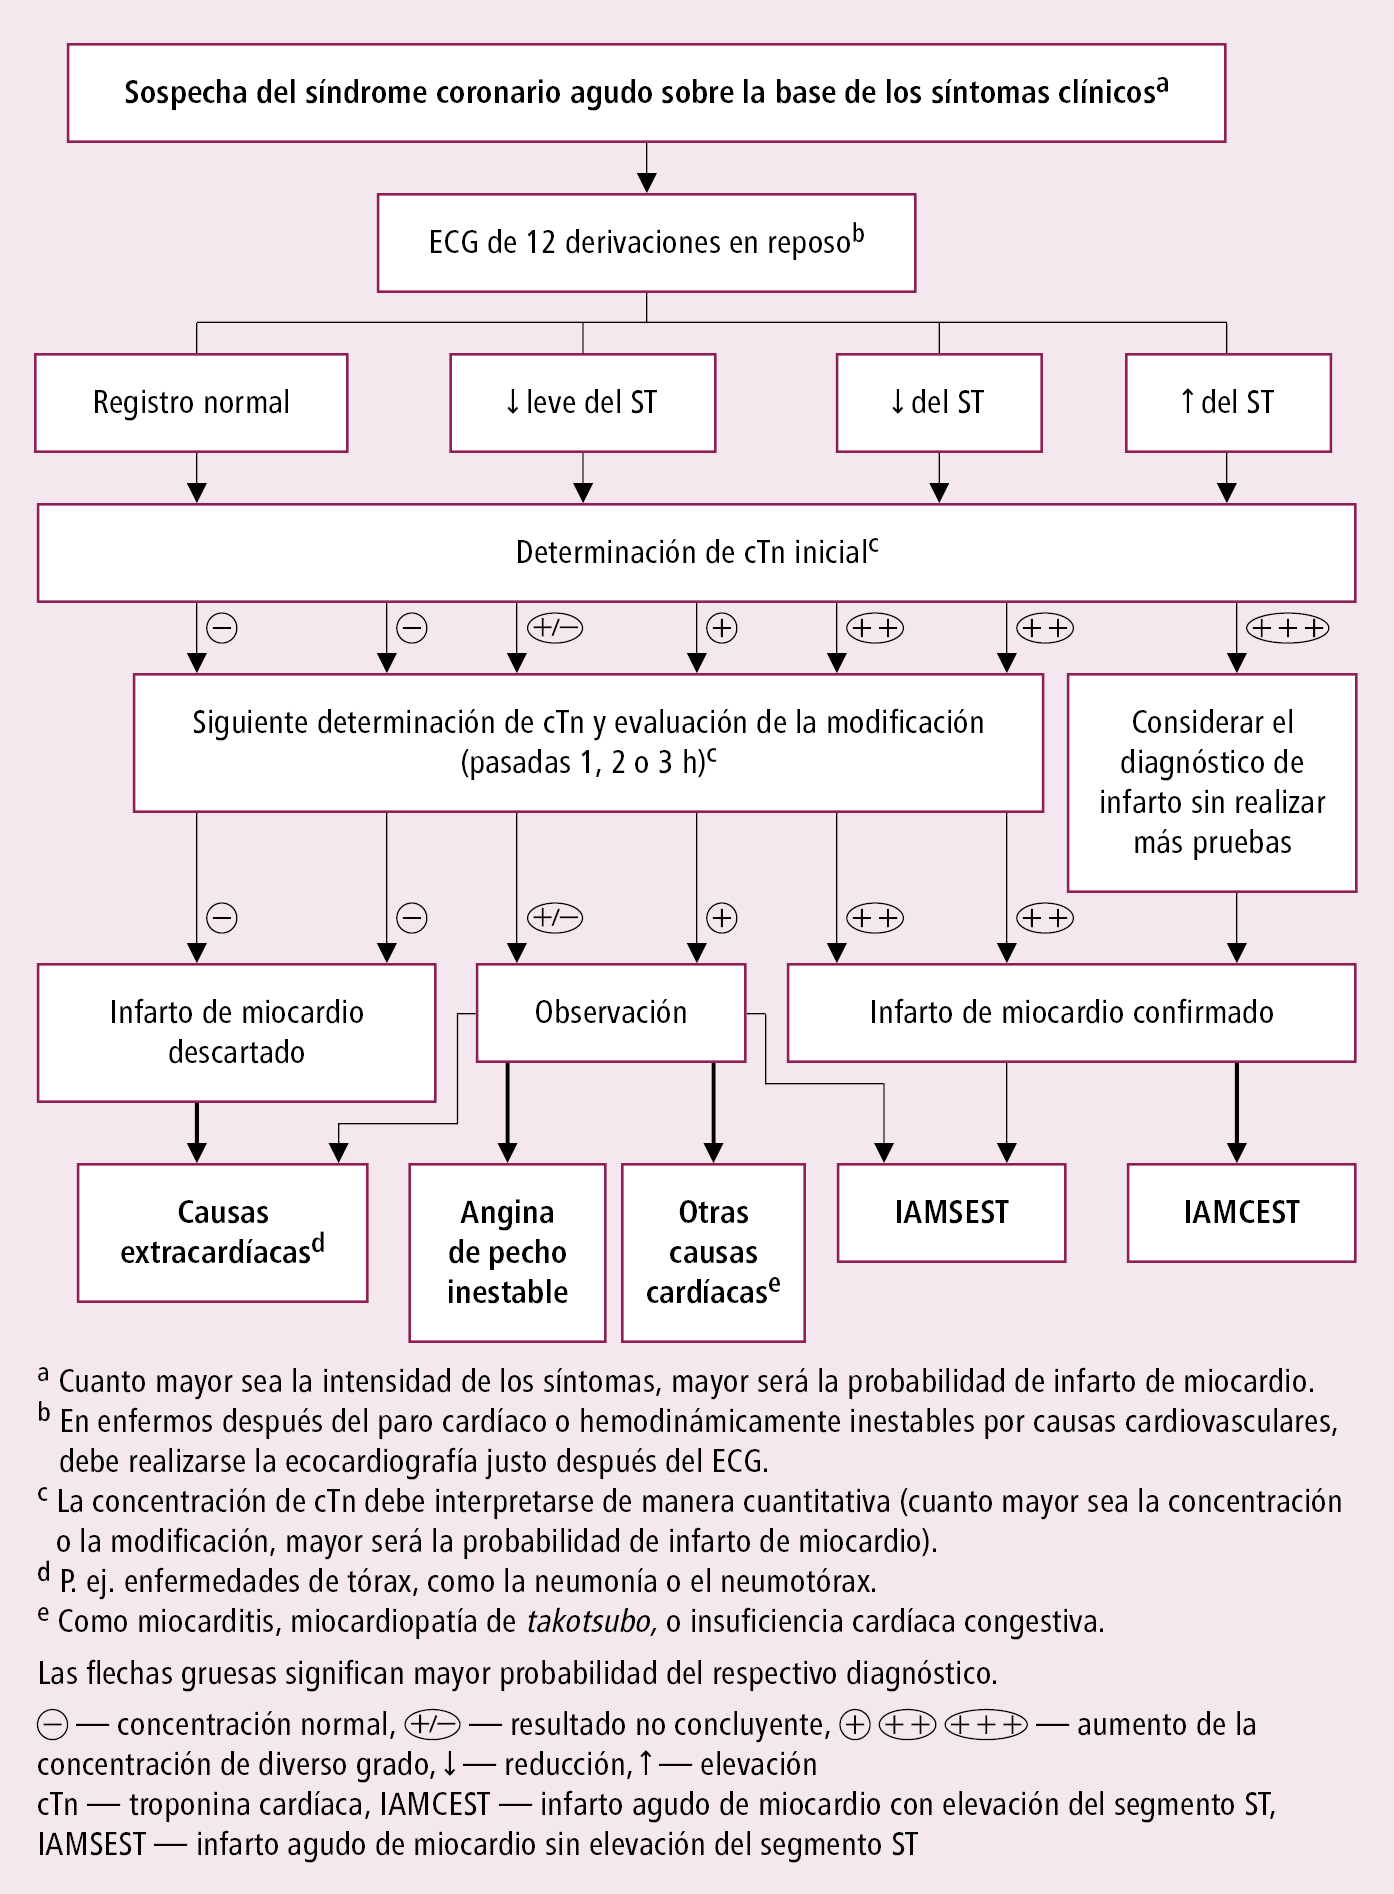    Fig. 2.5-1.  Principios generales de diagnóstico de los síndromes coronarios agudos (según las guías de la ESC 2020, modificado) 